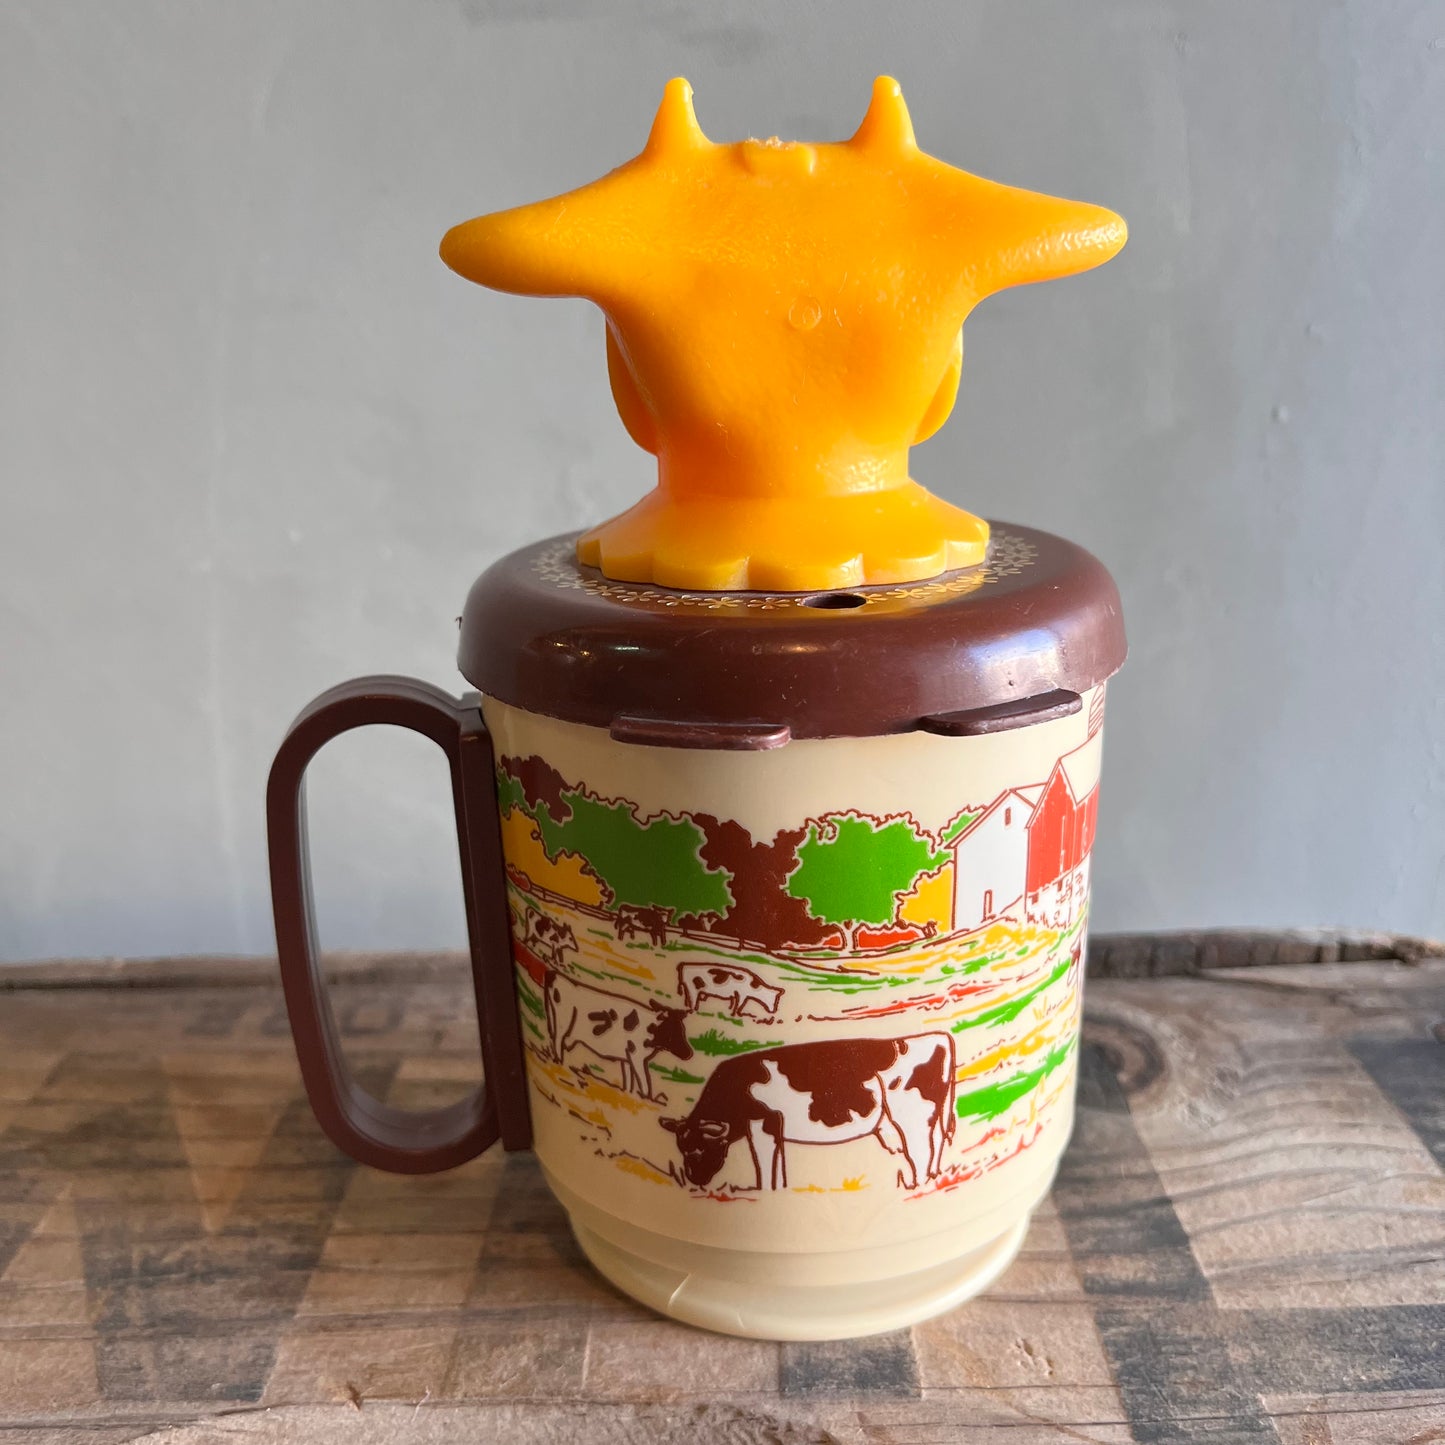 【USA vintage】WHIRLEY Moo-Cow Creamer and Kid’s mug